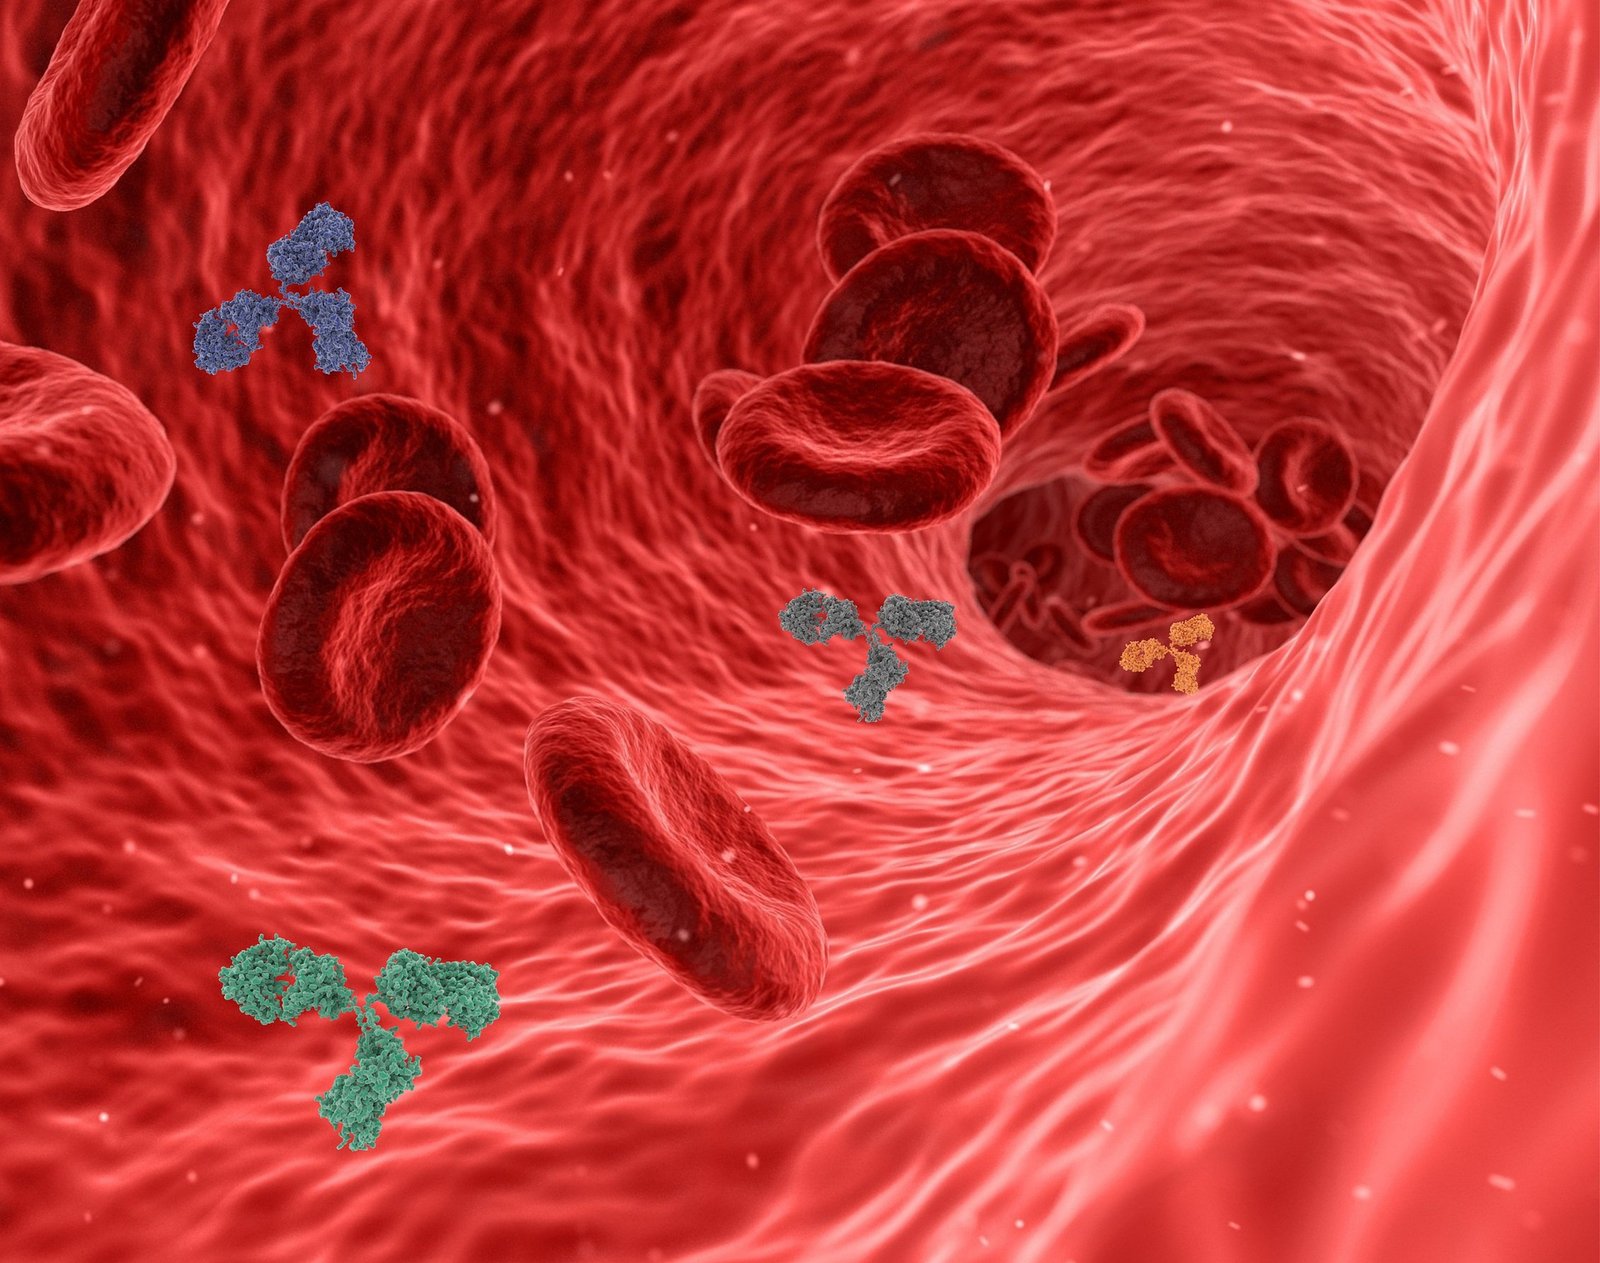 缺铁性贫血就是由于体内缺少铁质而影响血红蛋白合成所引起的贫血。血液